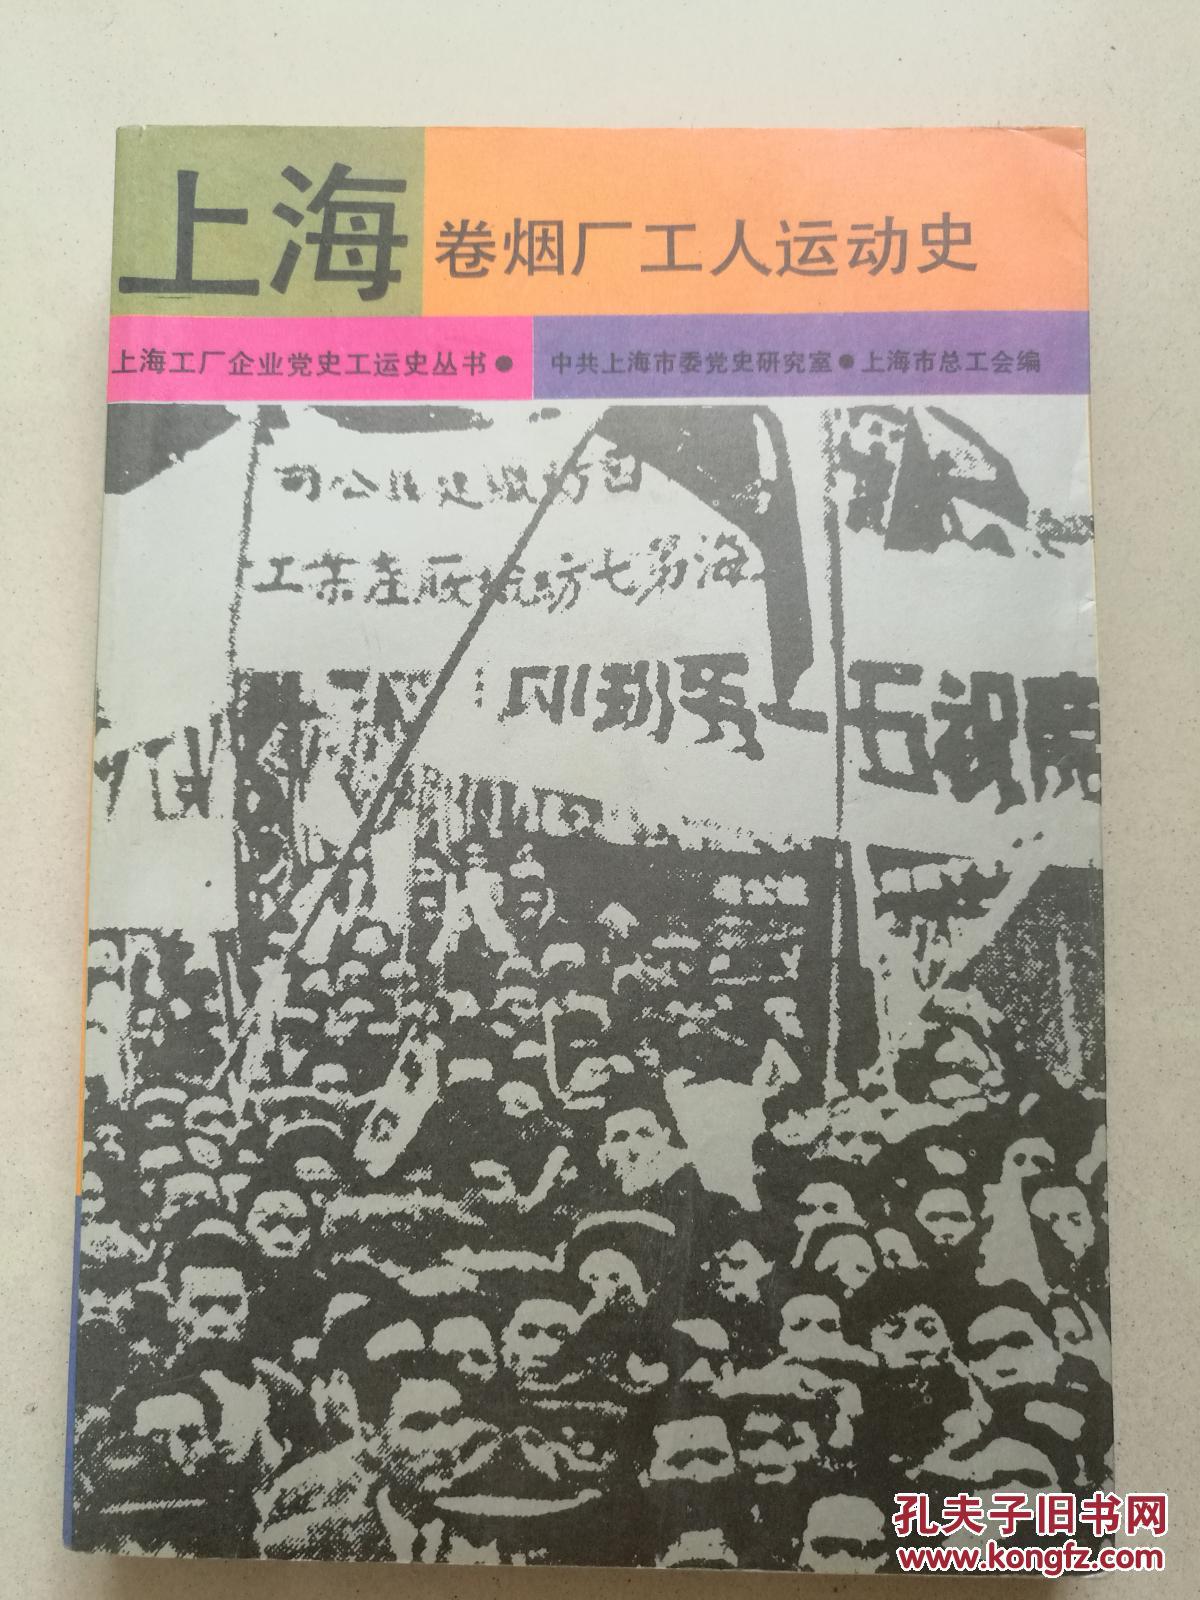 上海卷烟厂工人运动史